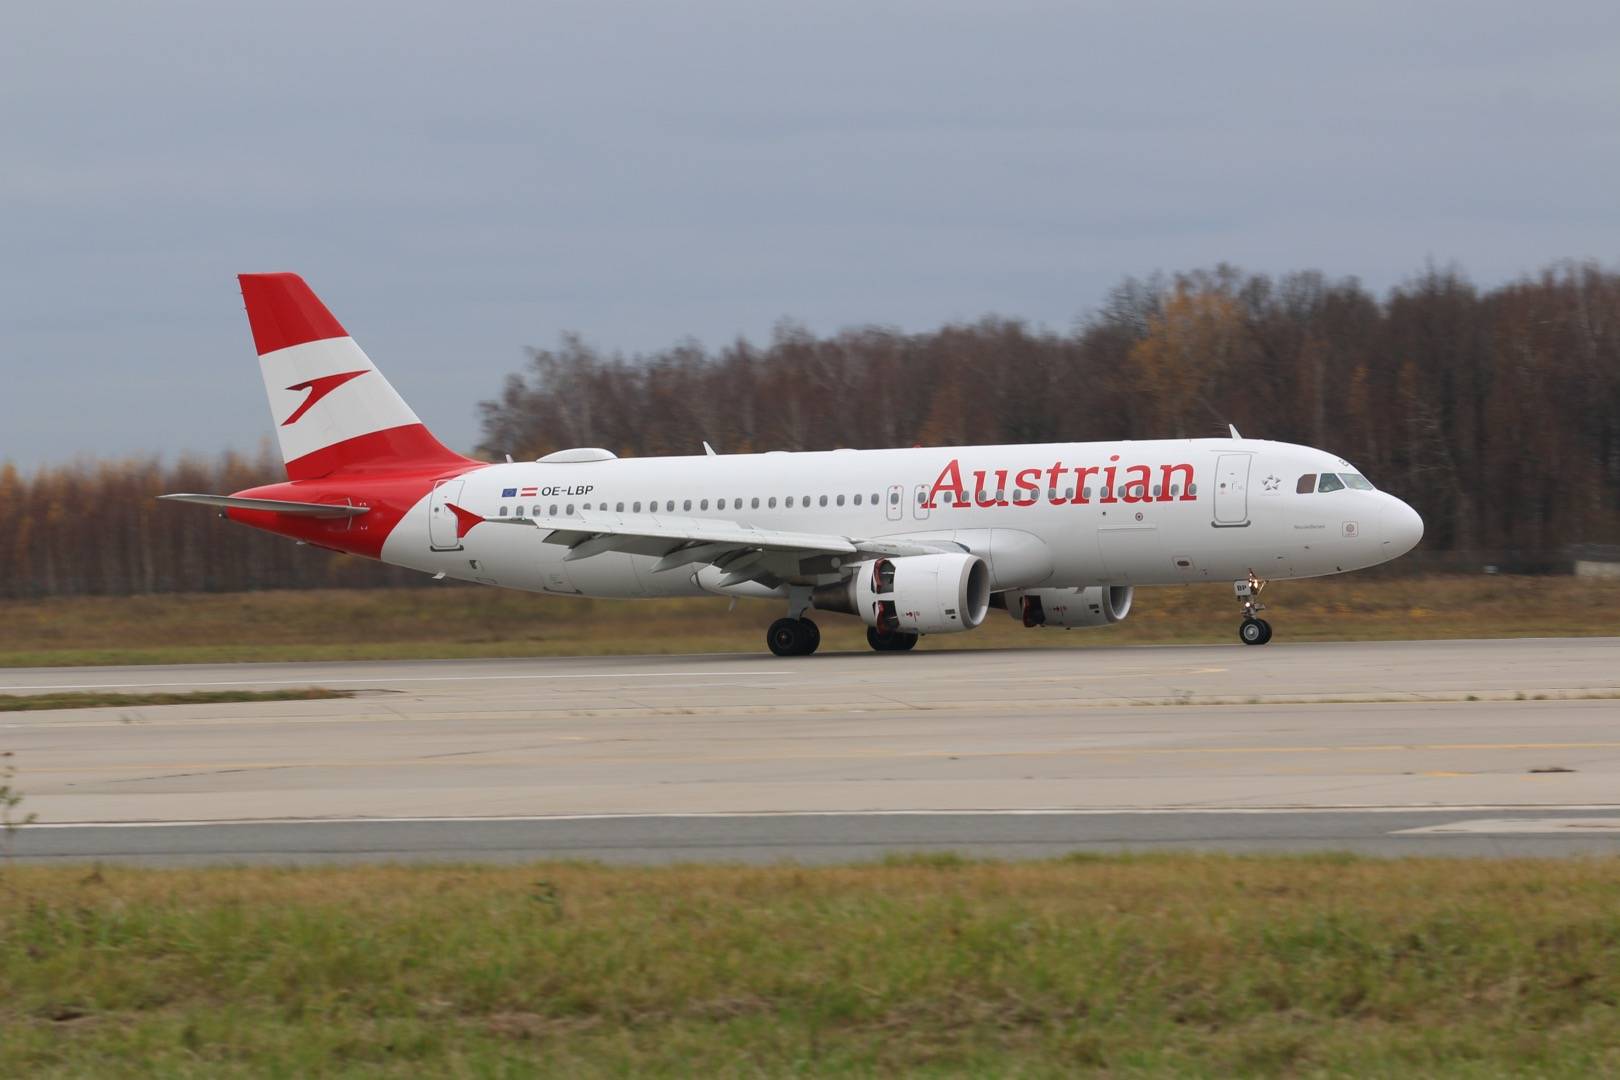 Авиакомпания австрийские авиалинии (austrian airlines) : бронирование авиабилетов онлайн. рейсы, маршруты | авиакасса